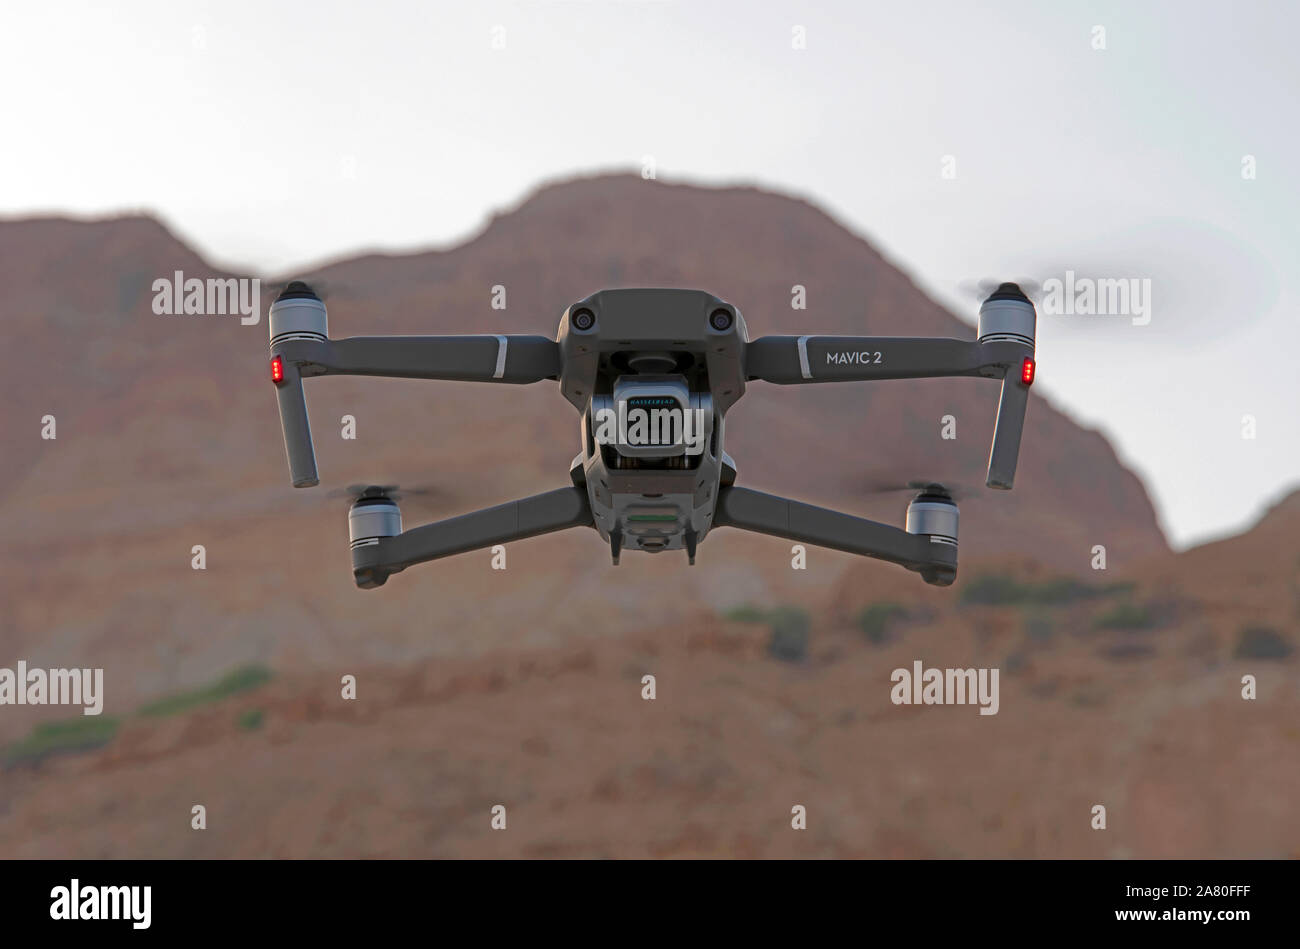 Télécommande Quadrocopter, drone, avec appareil photo Hasselblad espionnage sur le spectateur Banque D'Images